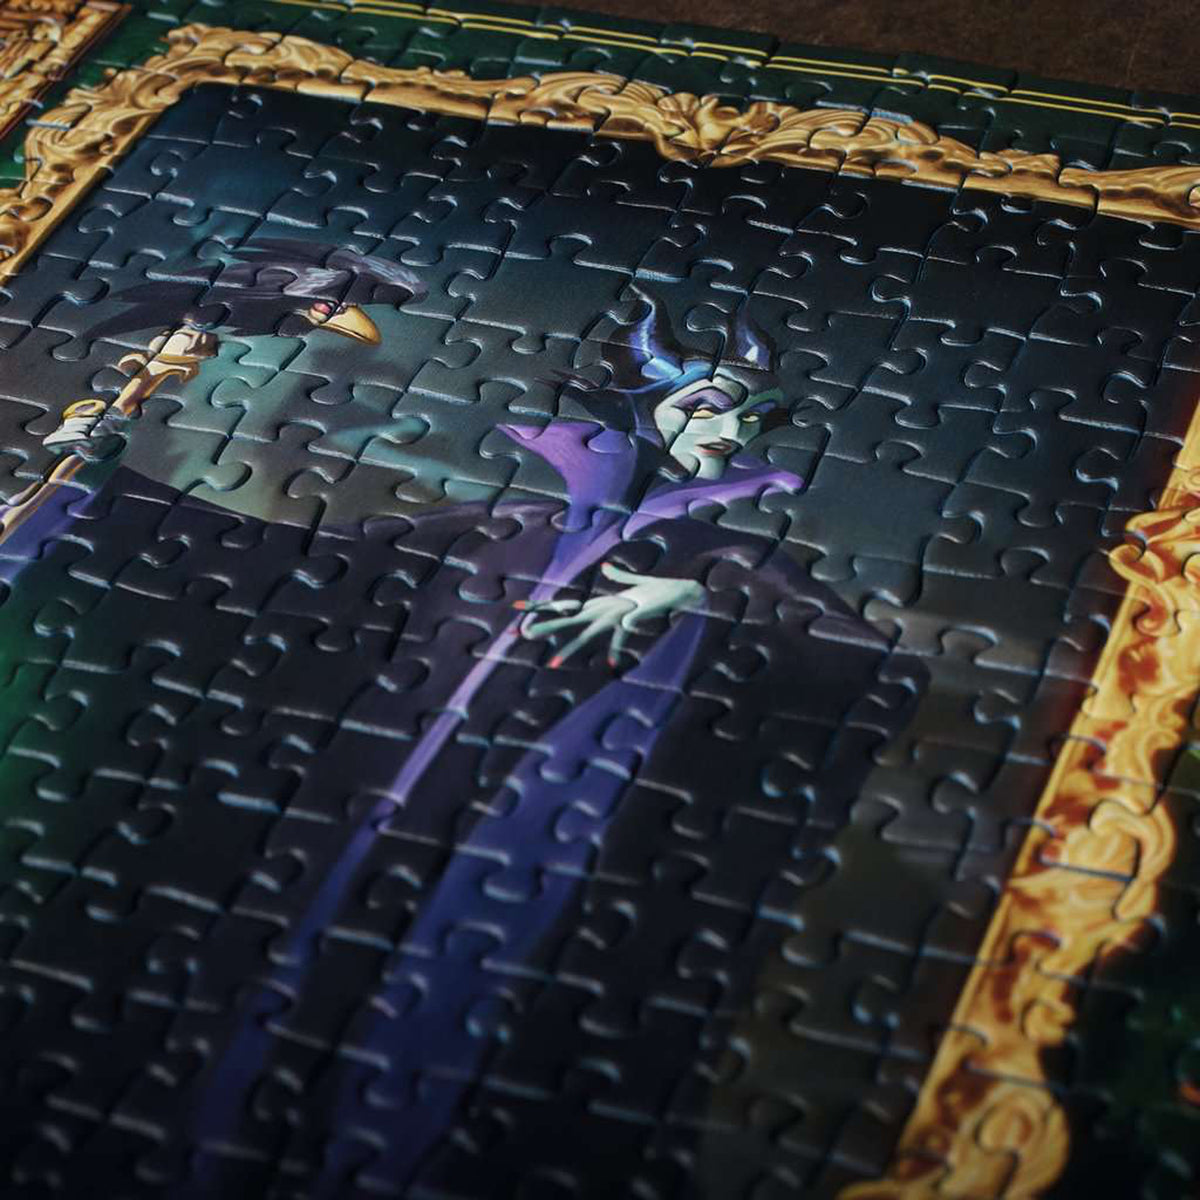 Disney Villainous: Maleficent 1000pc Puzzle